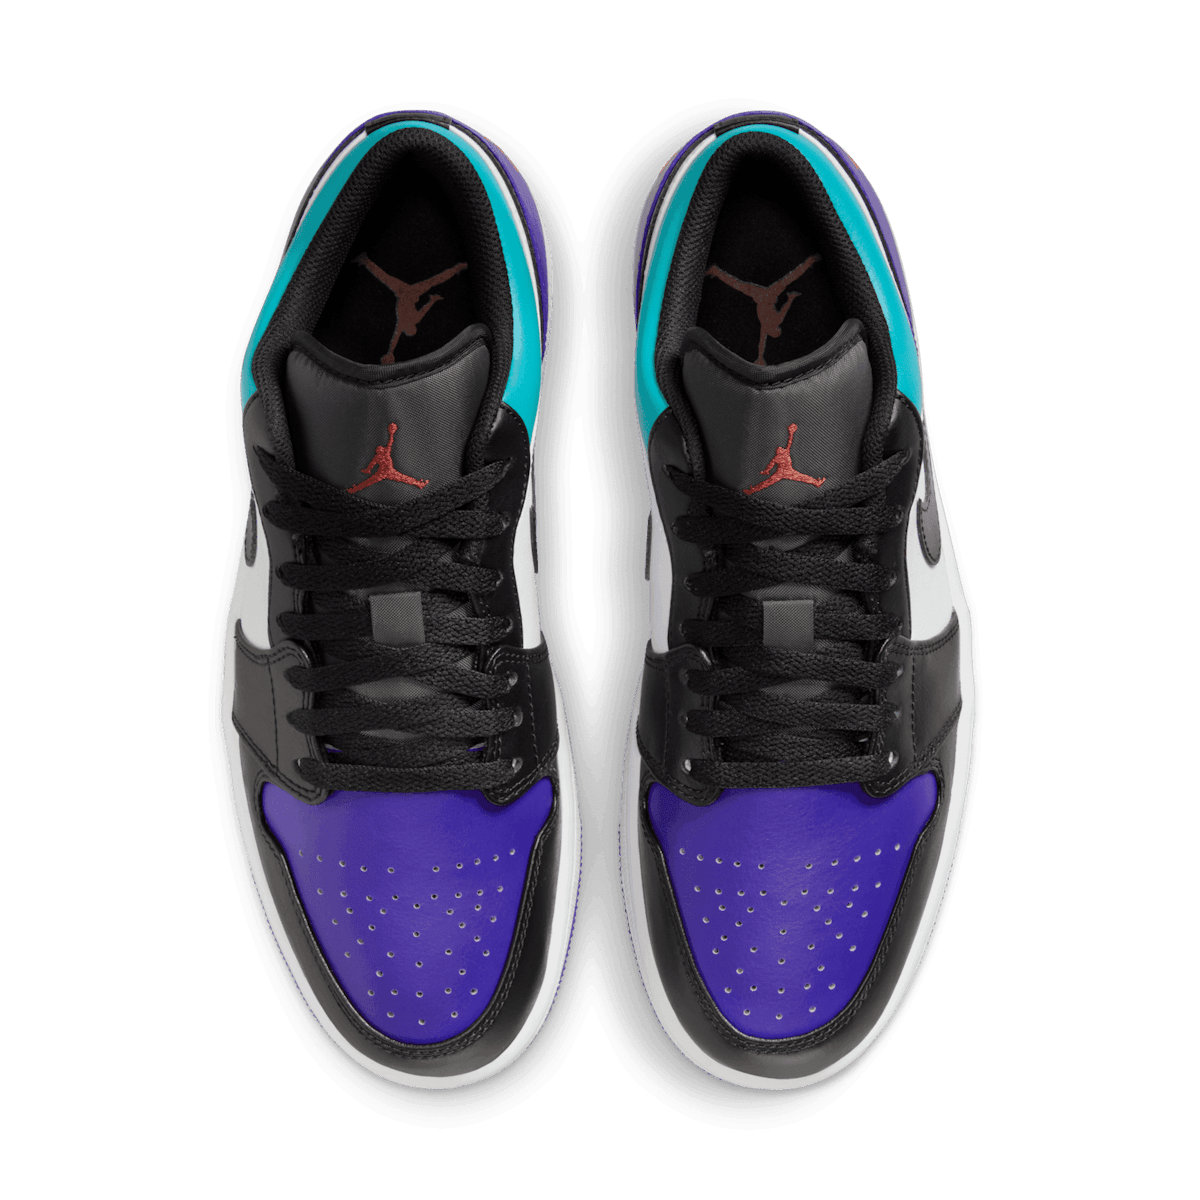 Air Jordan 1 Low Black Toe Grape Angle 1